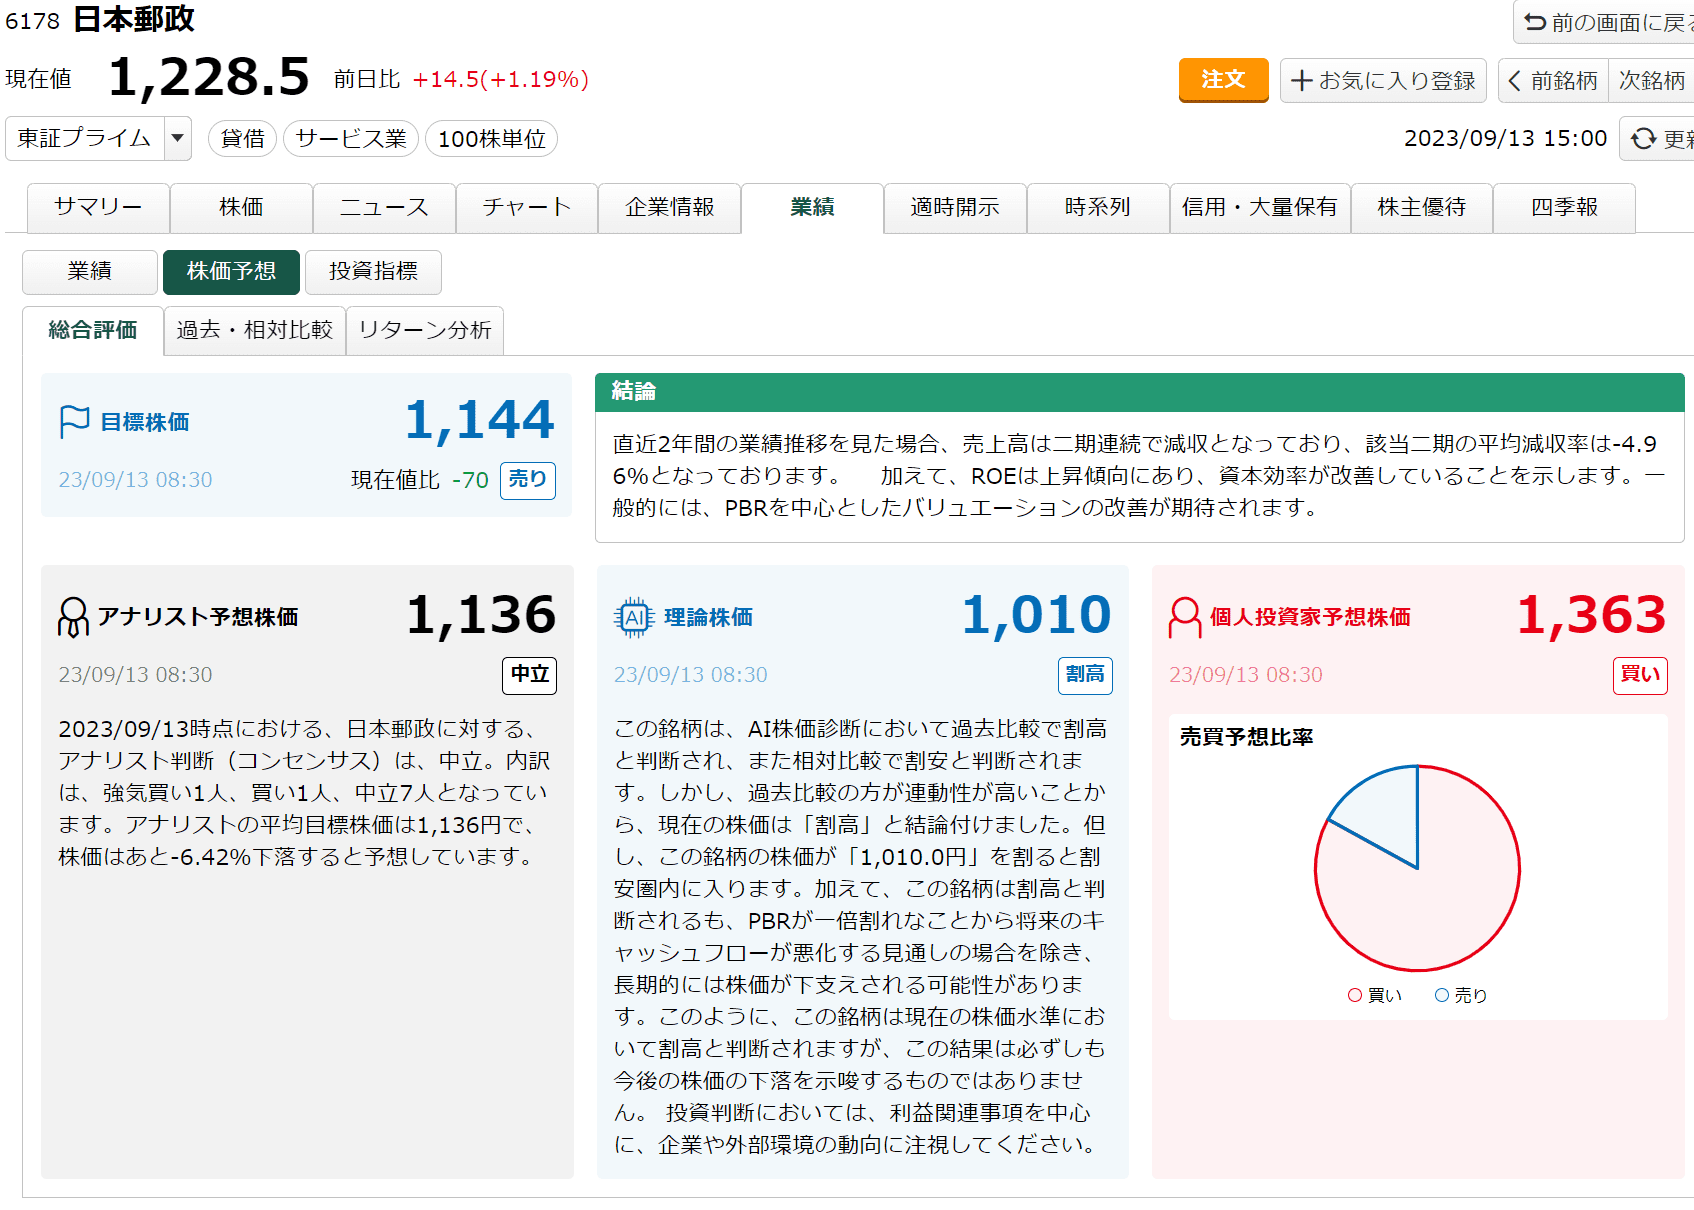 日本郵政の株価予想